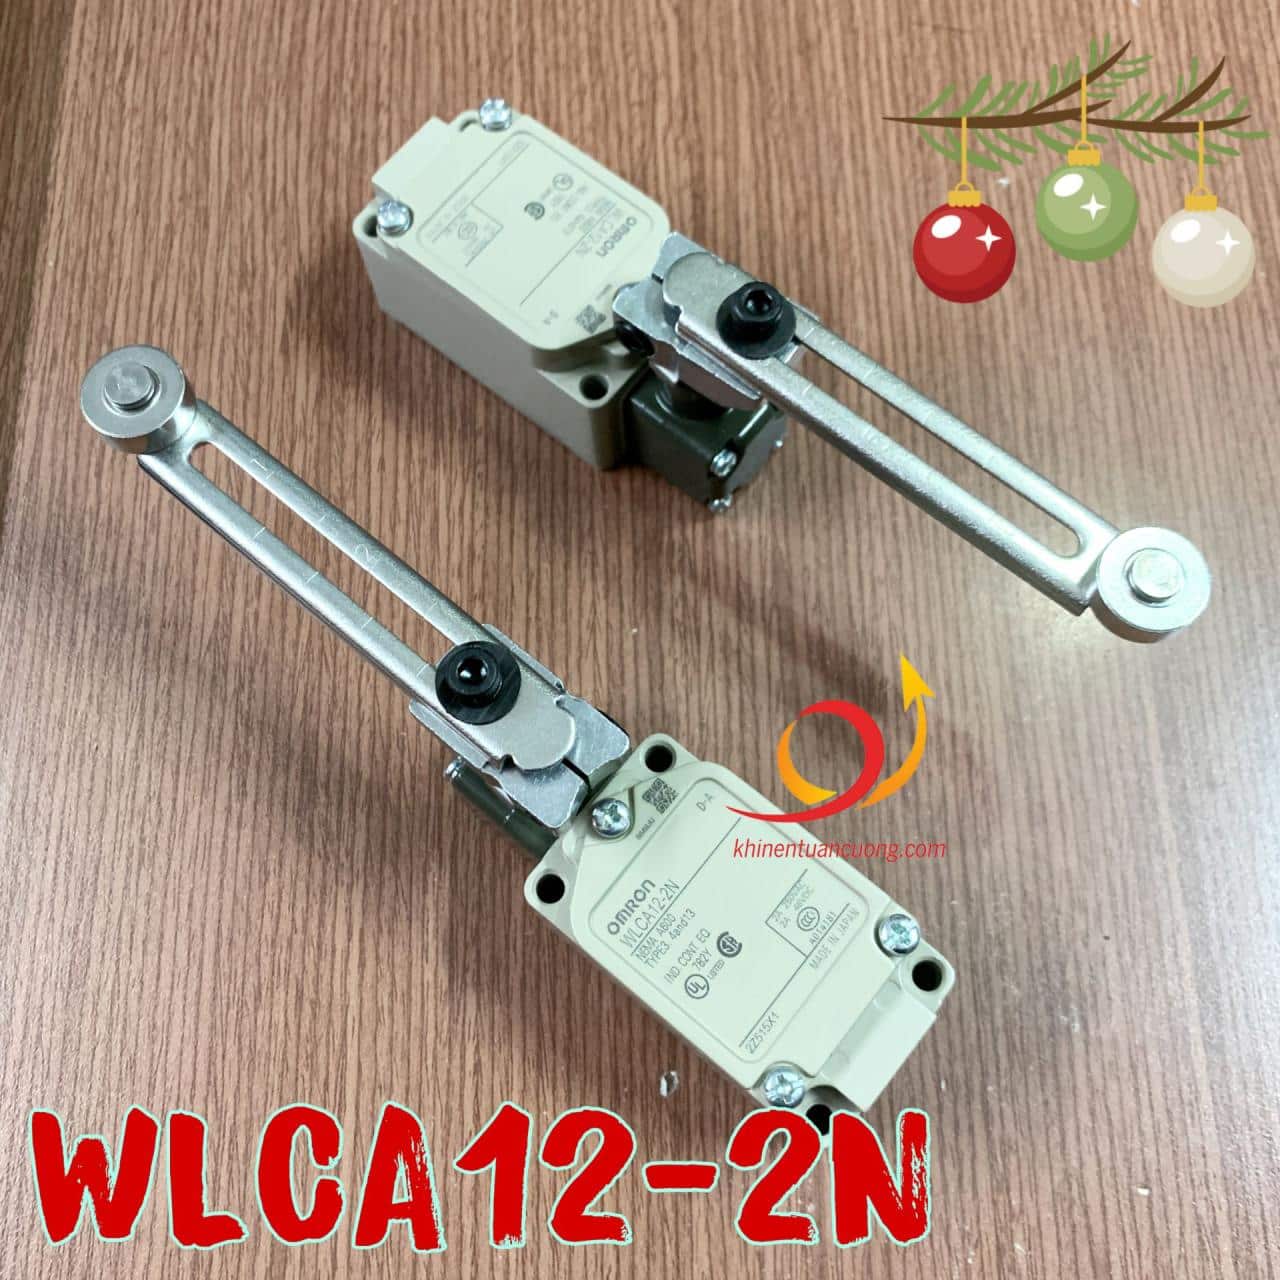 Công tắc hành trình WLCA12-2N đến từ Omron là dòng công tắc cao cấp thường dùng trong vận thang hoặc những hệ thống máy cần độ chính xác cao